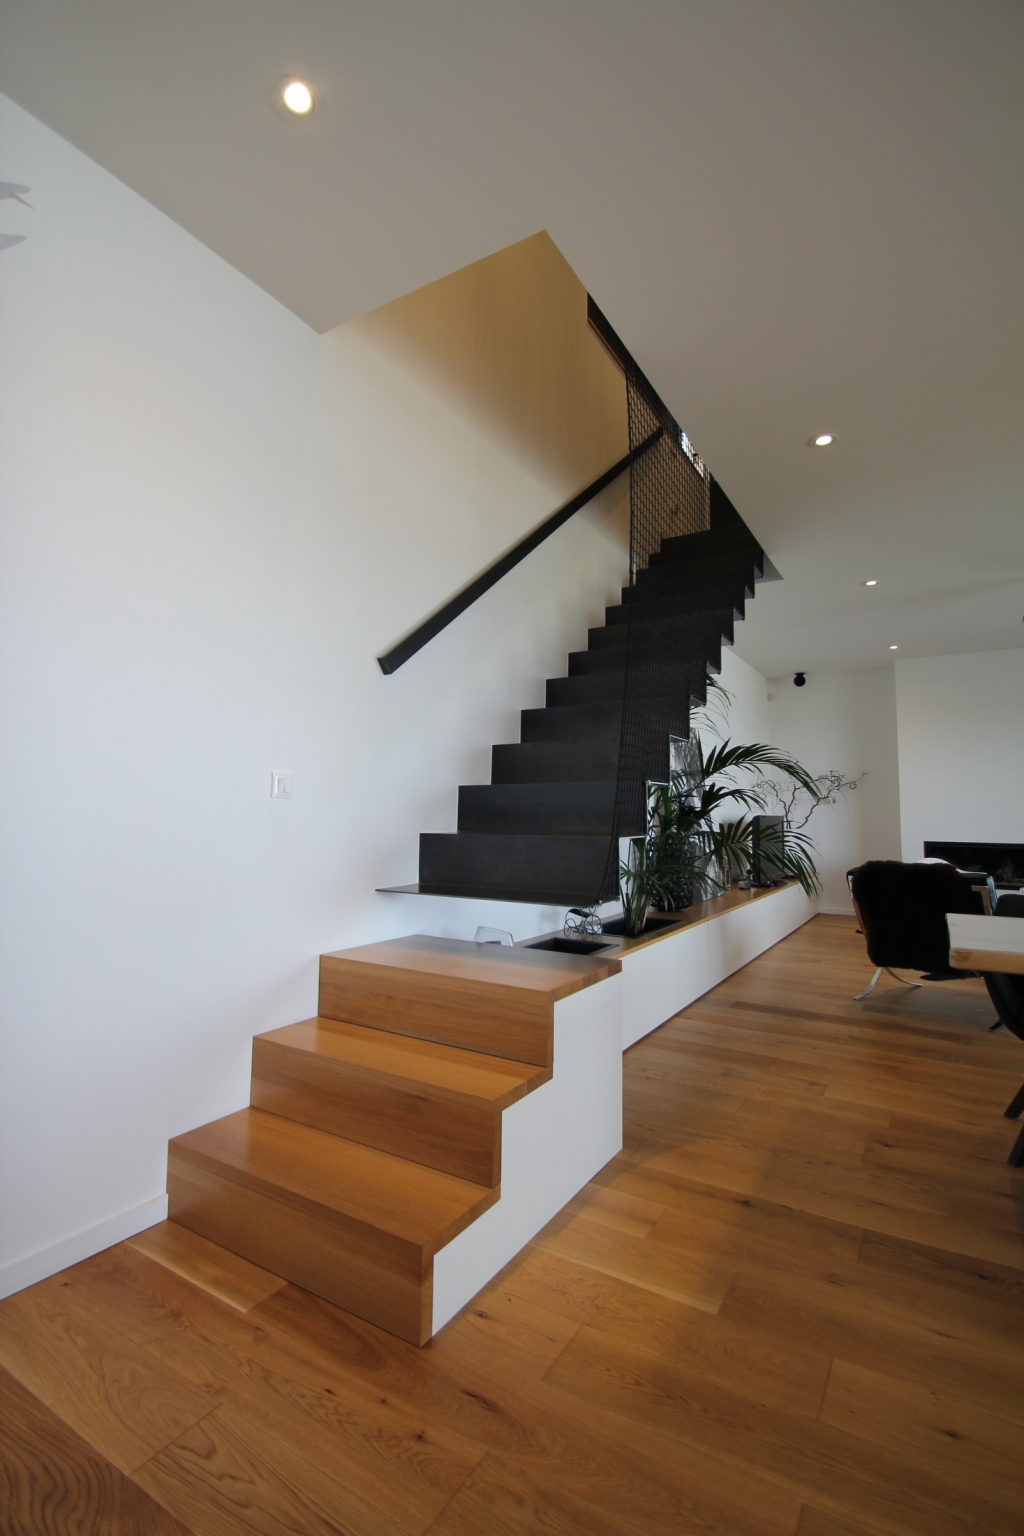 escalier design Lynium